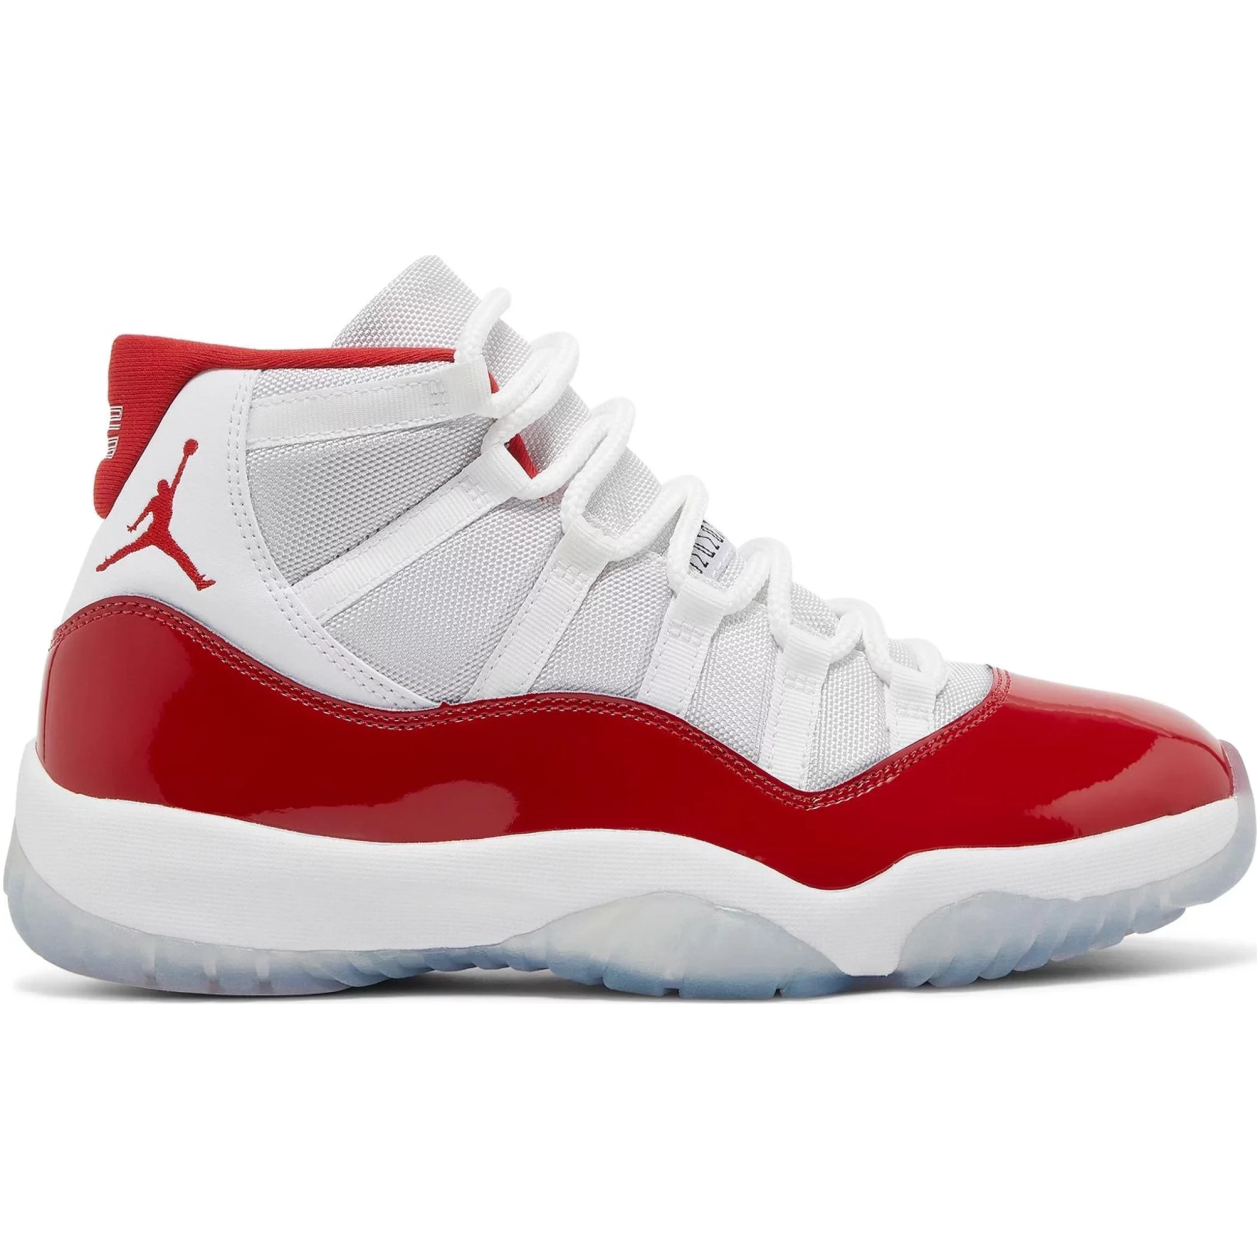 Air Jordan 11 Retro Cherry – Sneakers Joint